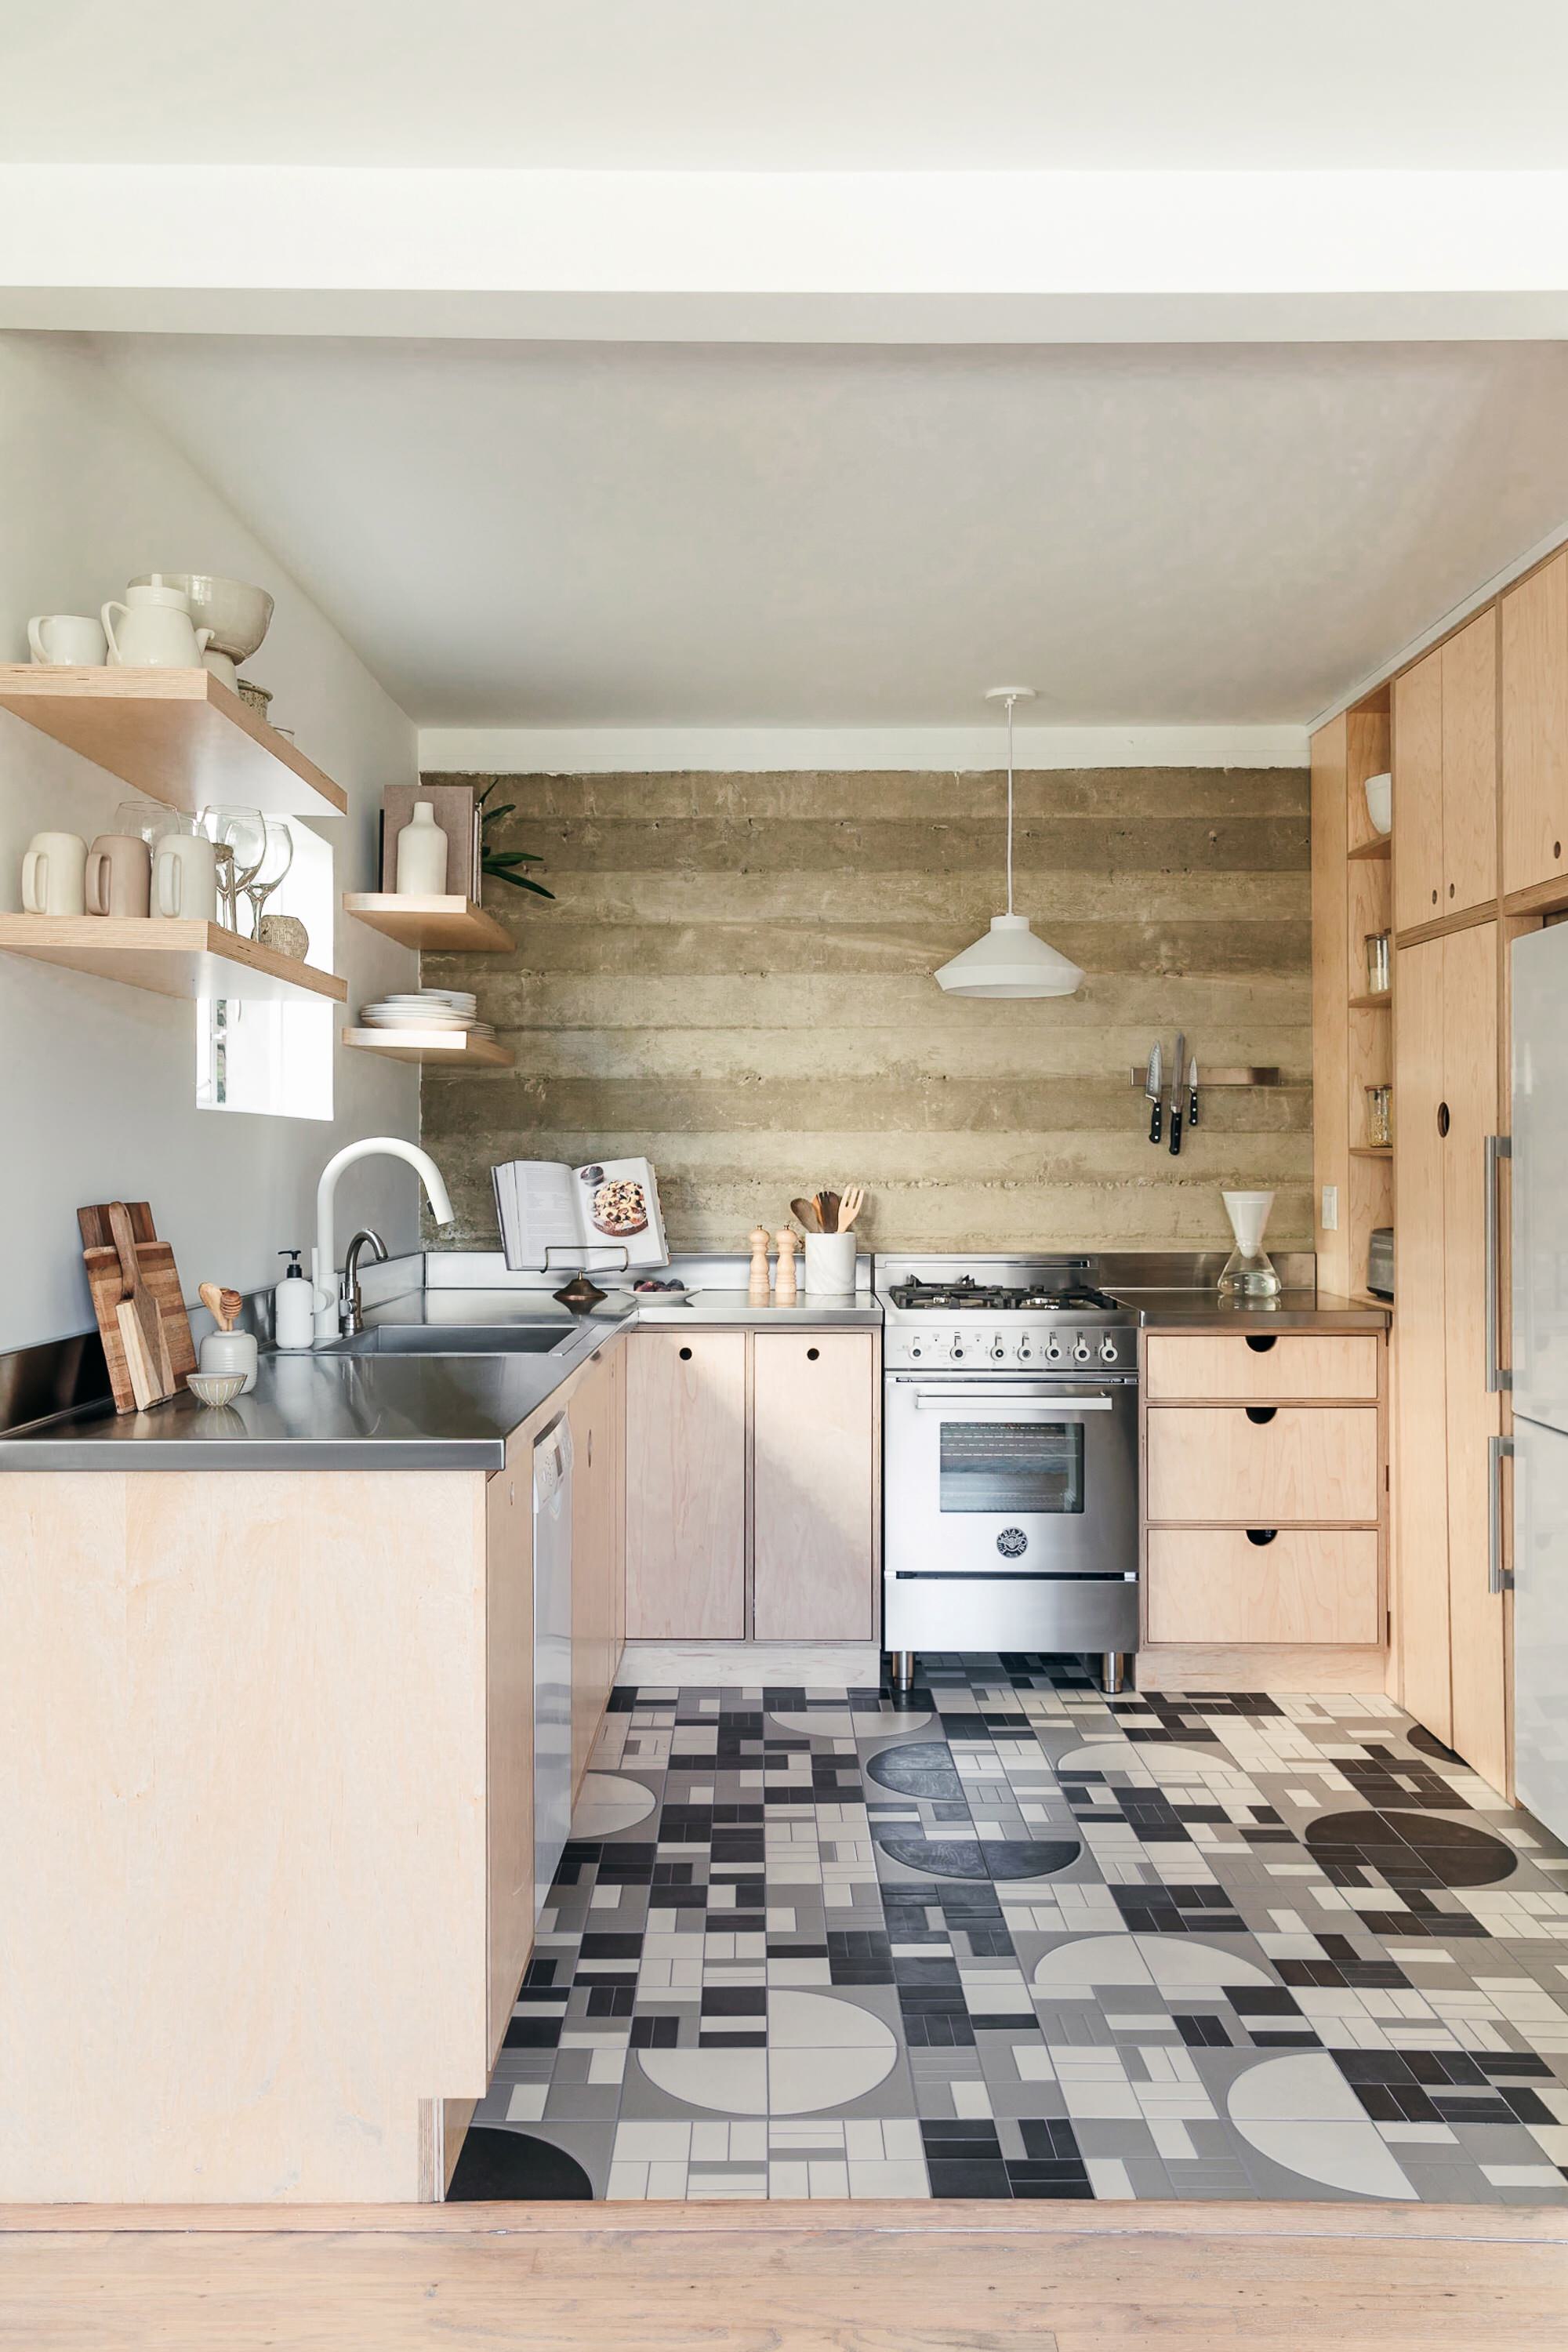 White Tile Floor Kitchen Ideas, Black And White Kitchen Floor Tiles Ideas